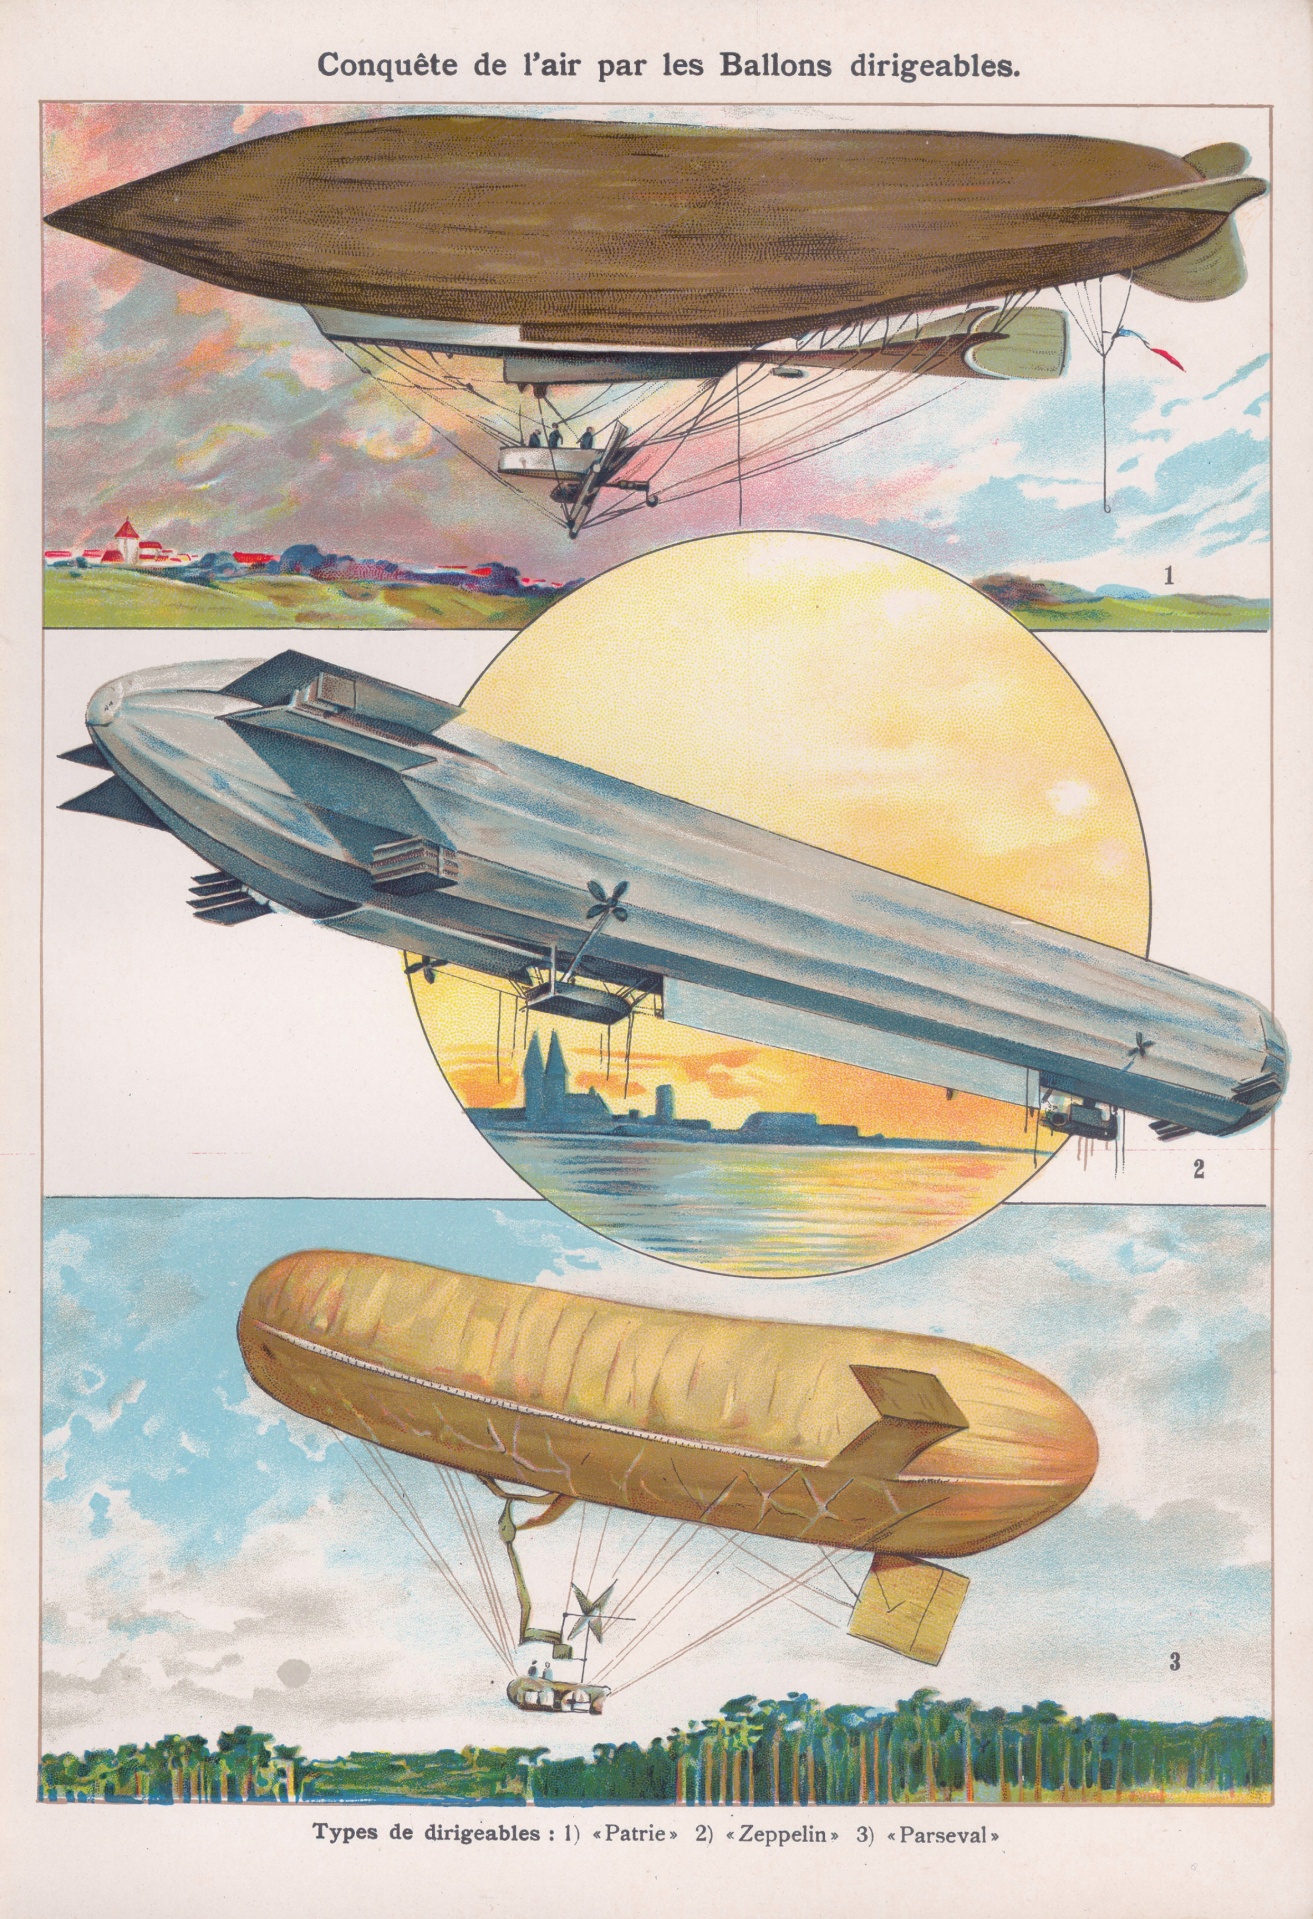 Zeppelin——齐柏林飞艇概念 - 普象网